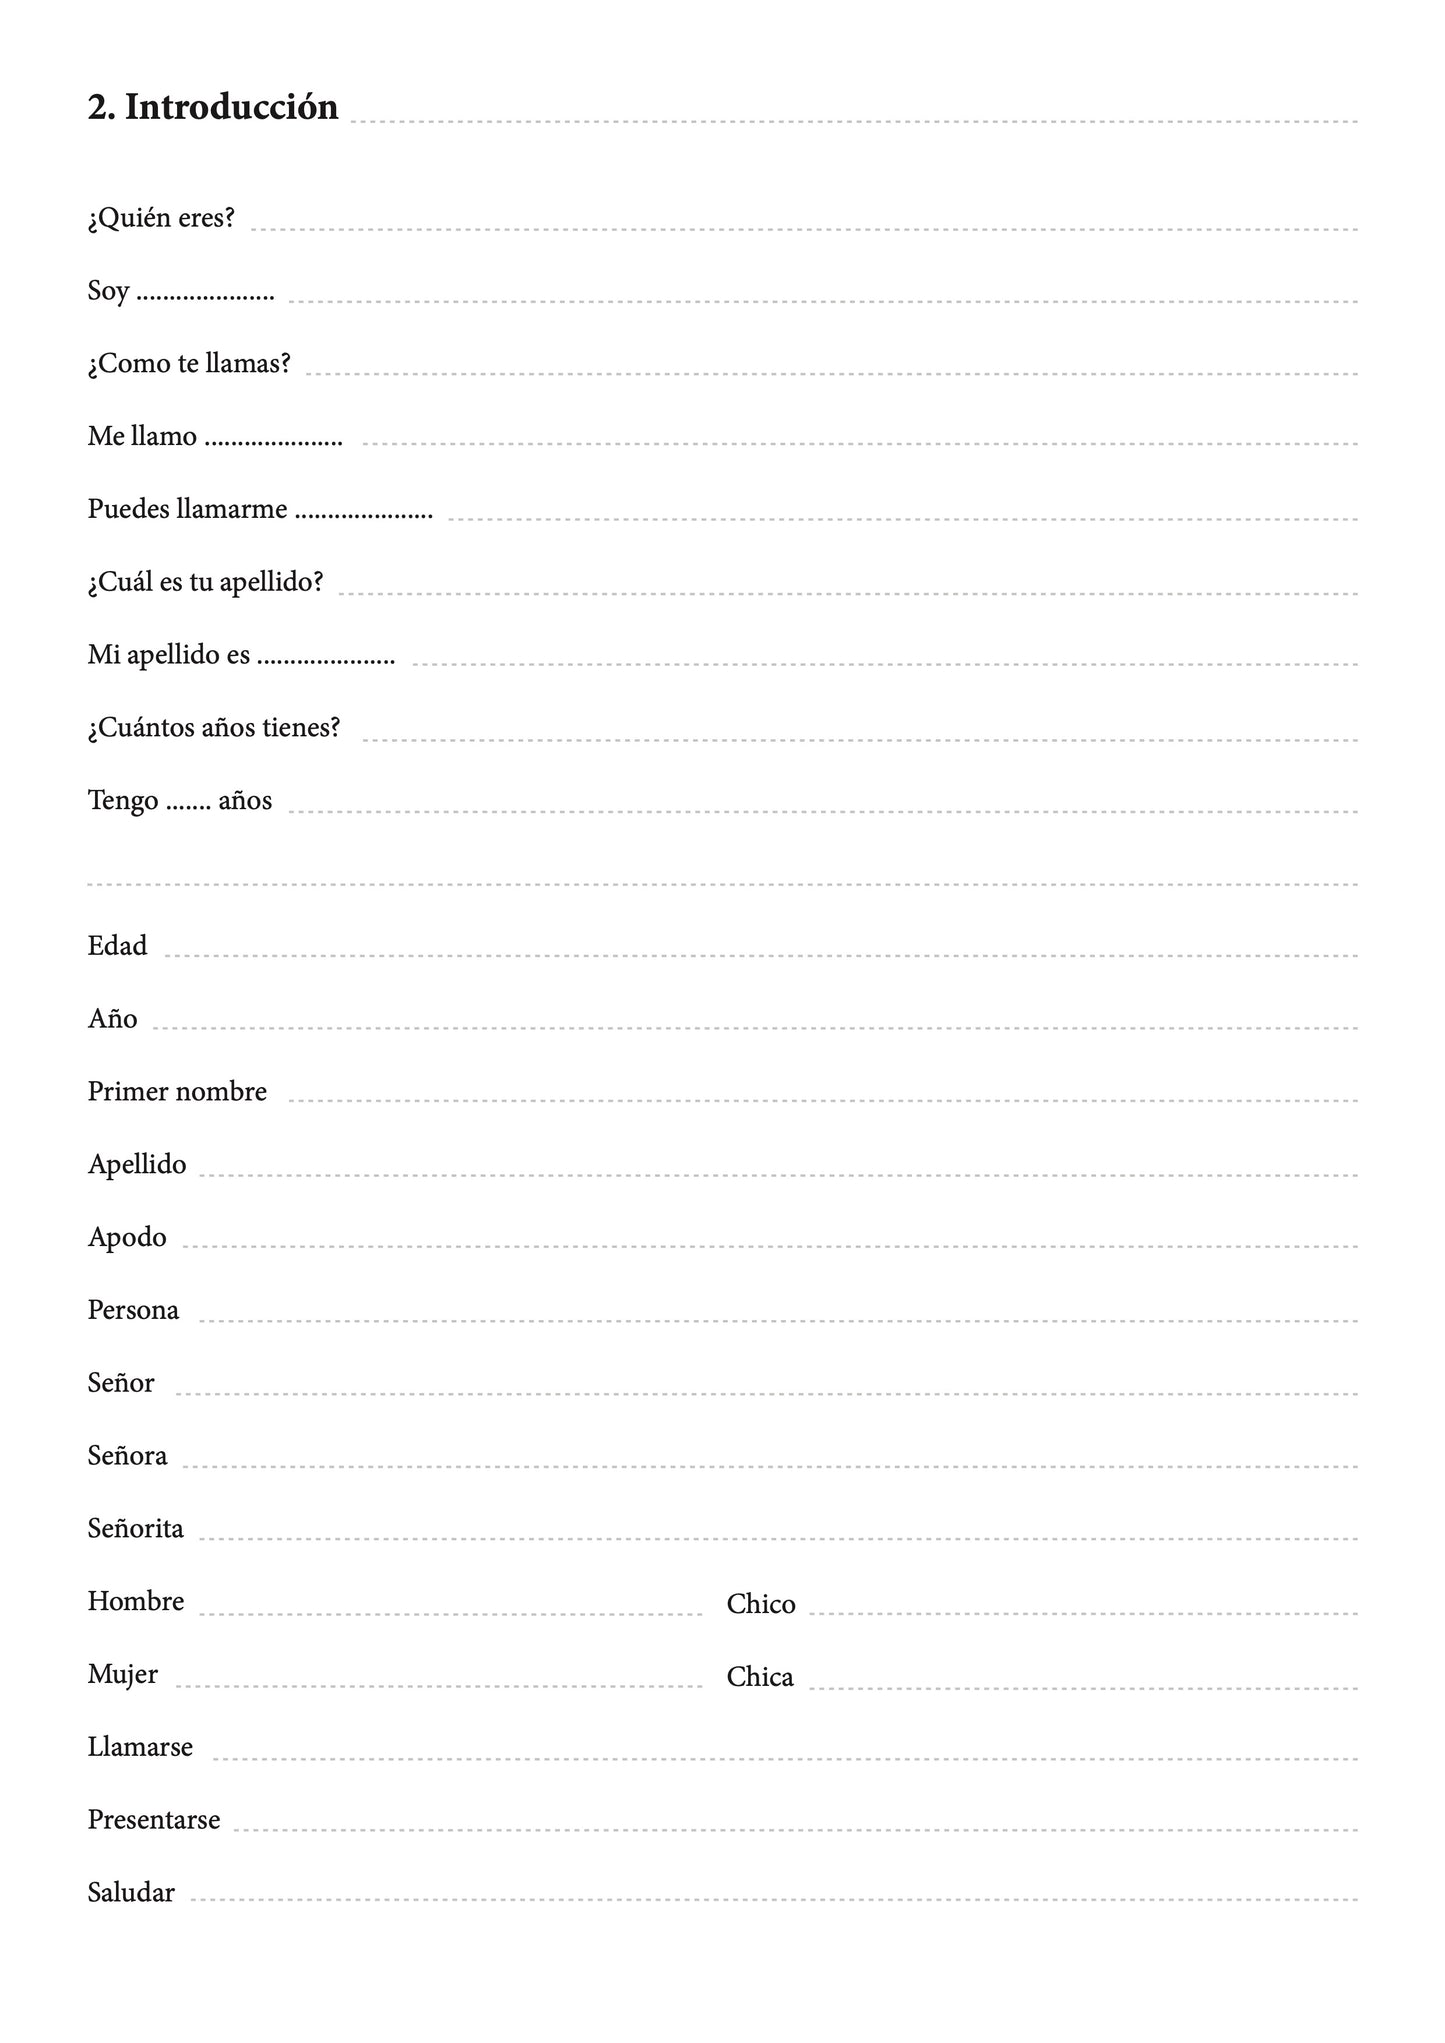 Español-armenio cuaderno de vocabulario